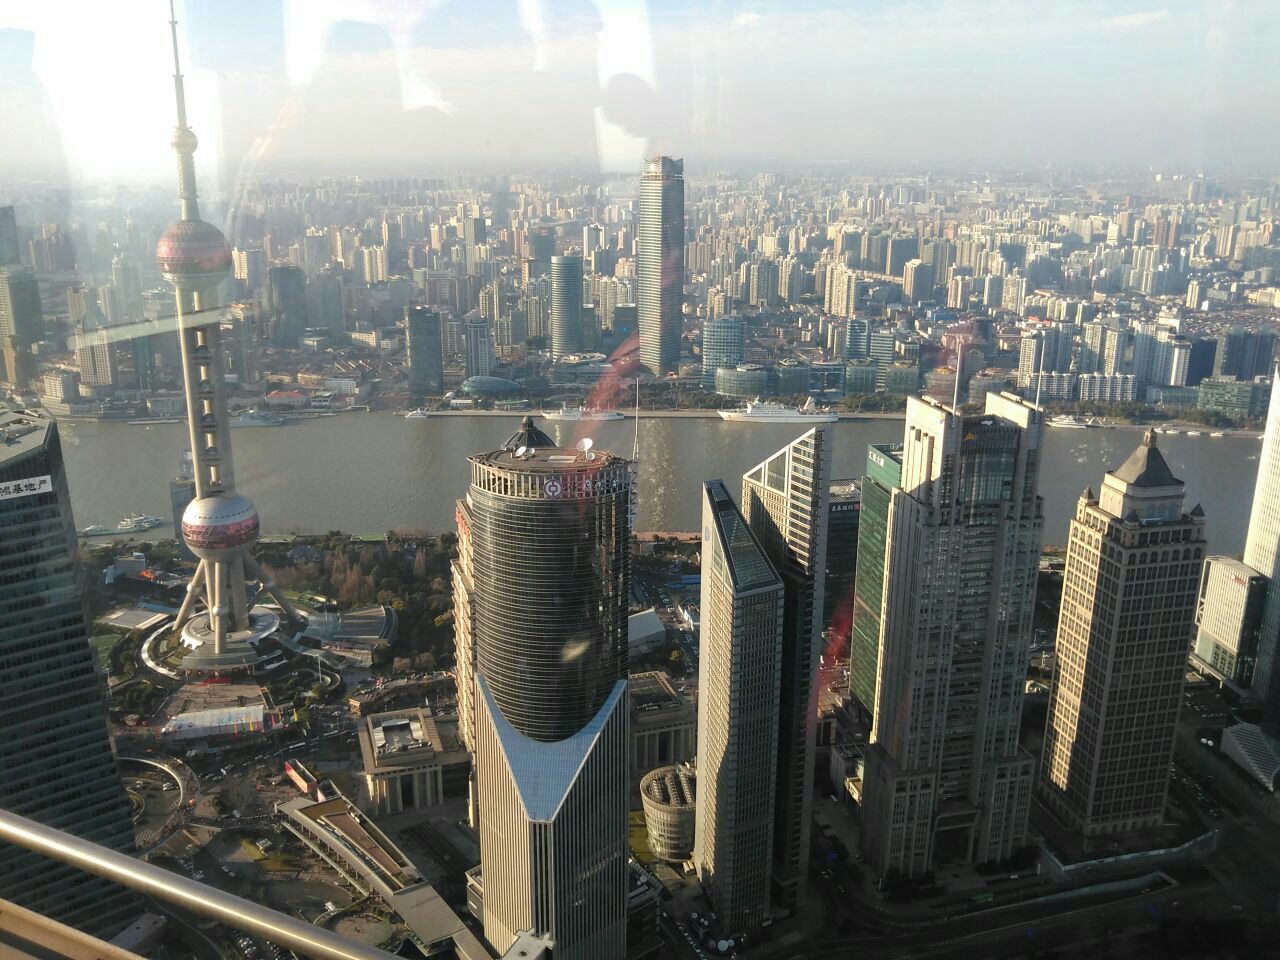 上海金茂大厦88层观光厅攻略,上海金茂大厦88层观光厅门票/游玩攻略/地址/图片/门票价格【携程攻略】